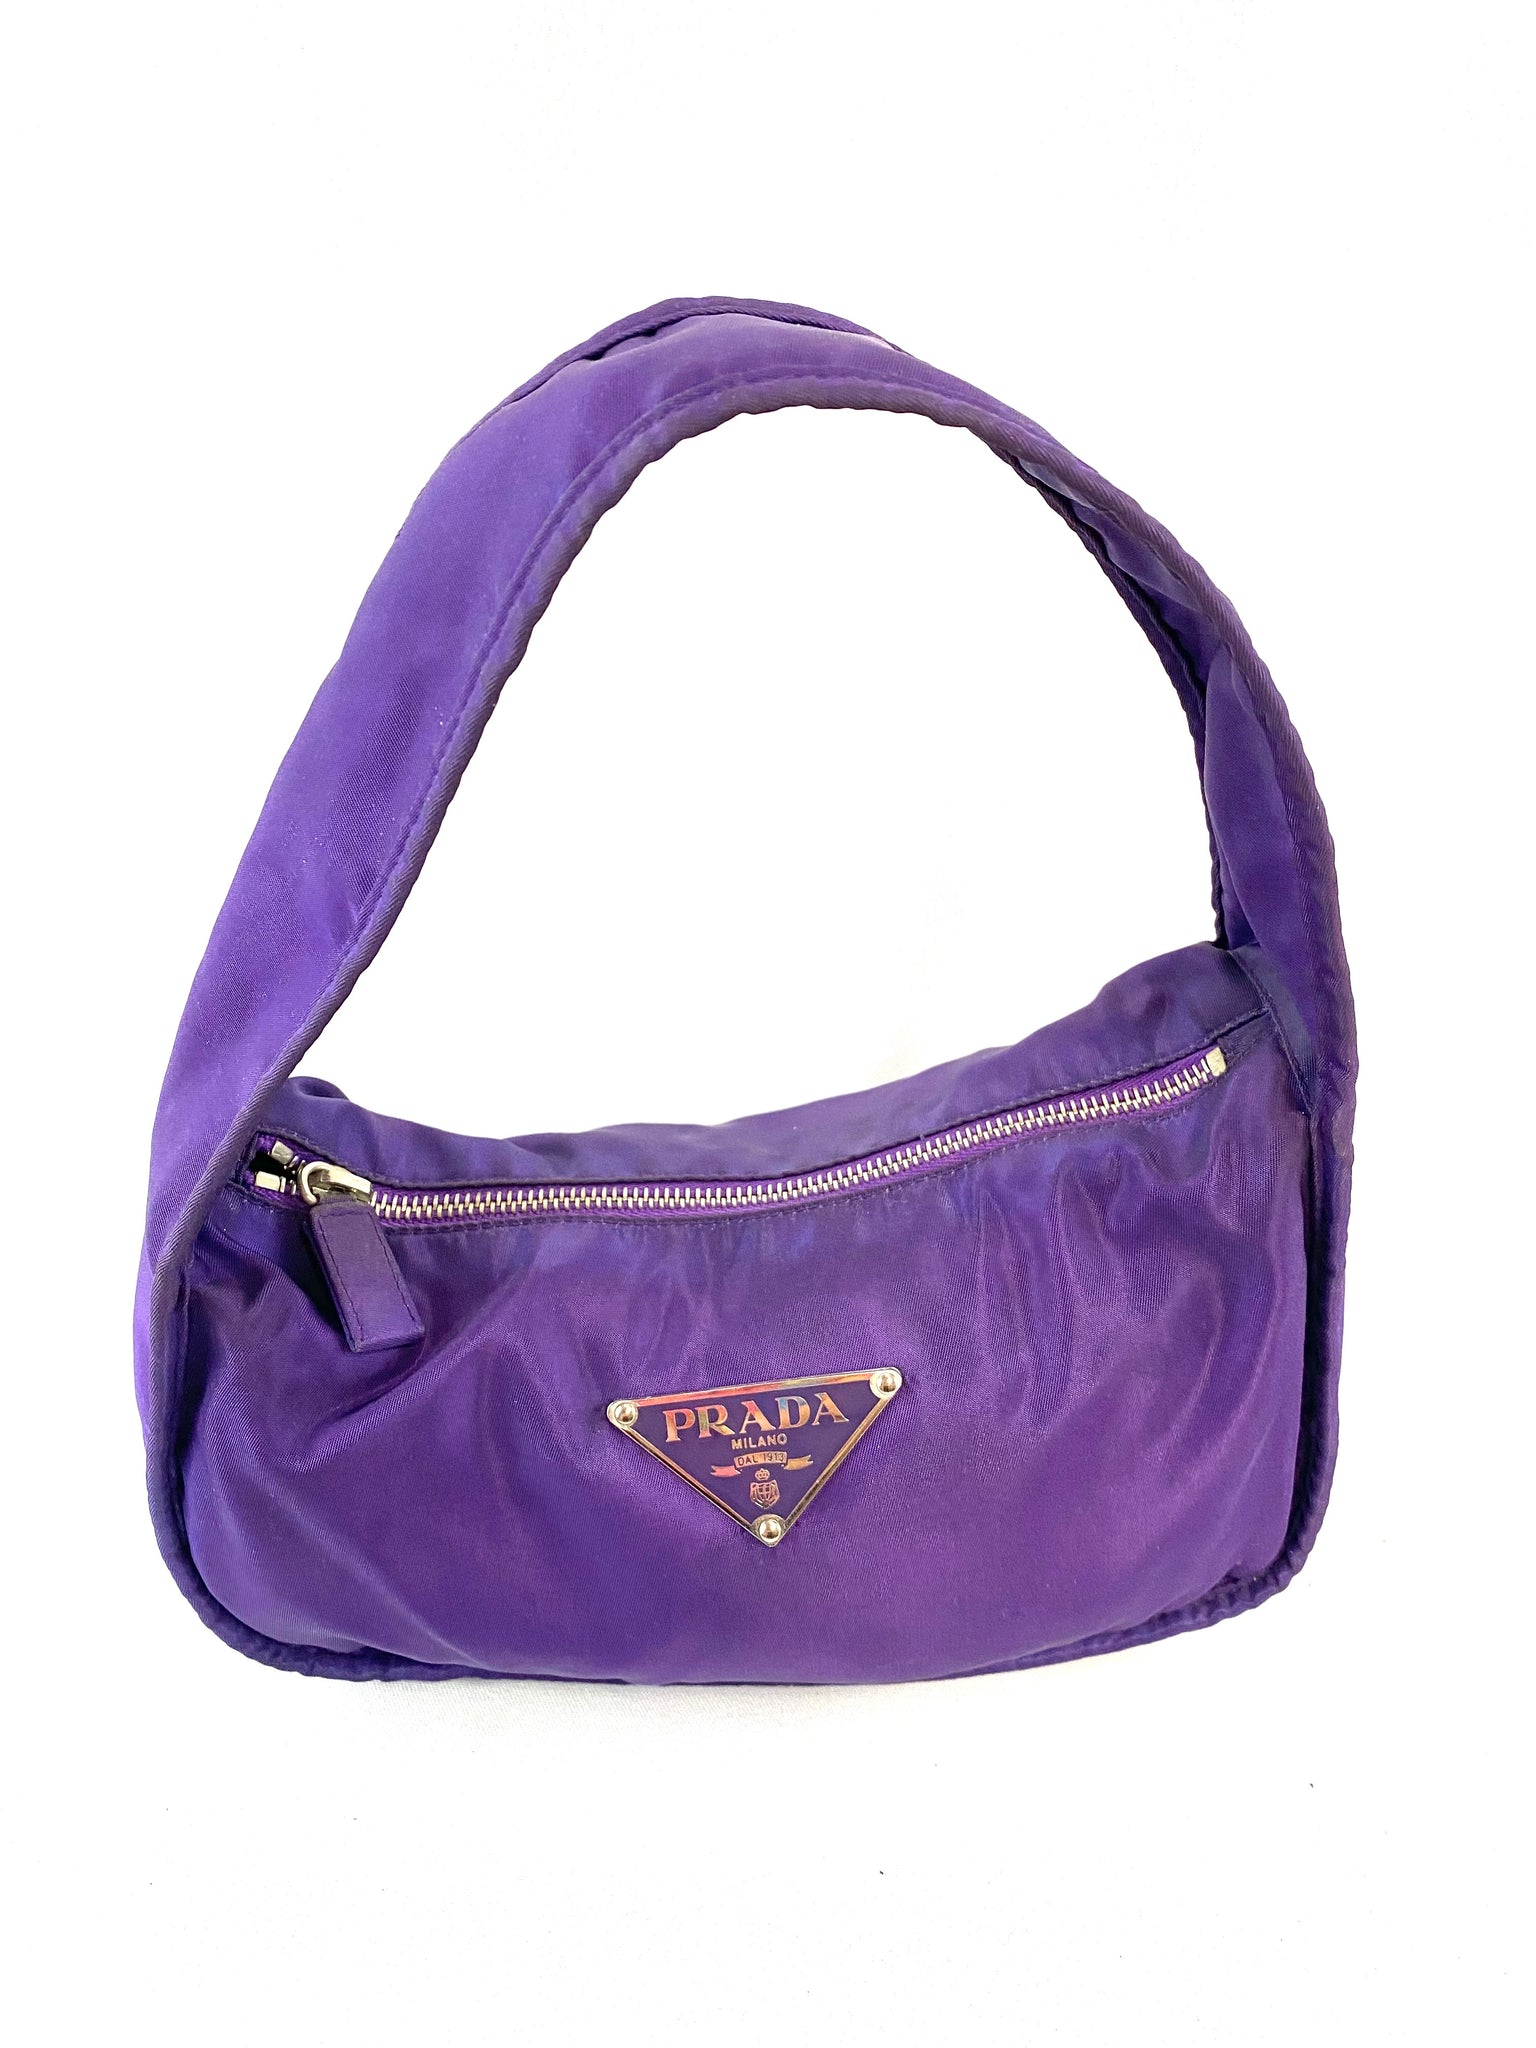 prada purple bag